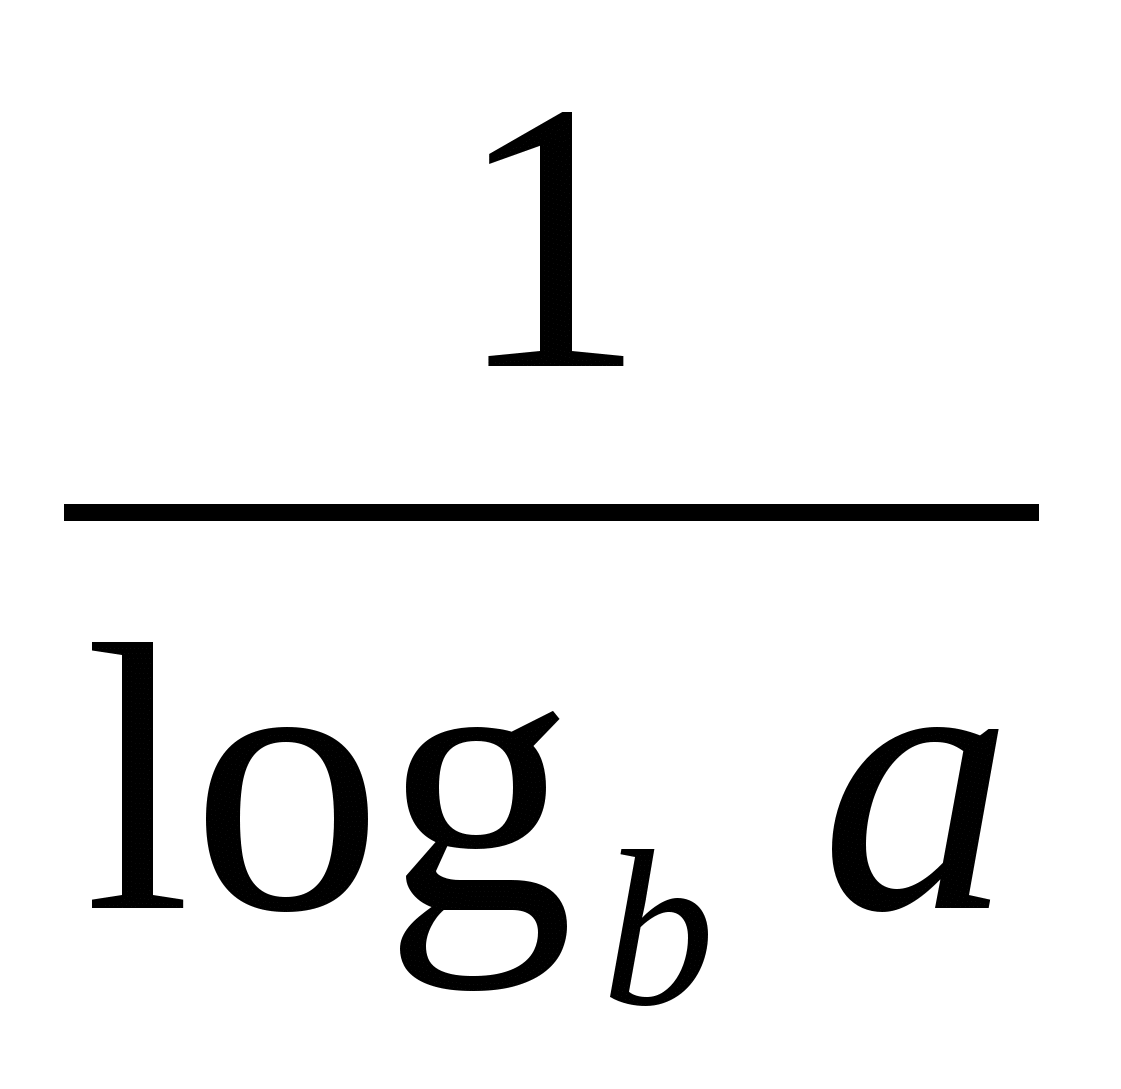 Последовательность введения понятия логарифма и логарифмической функции, а также их свойств в школьных учебниках, использующих в настоящее время.